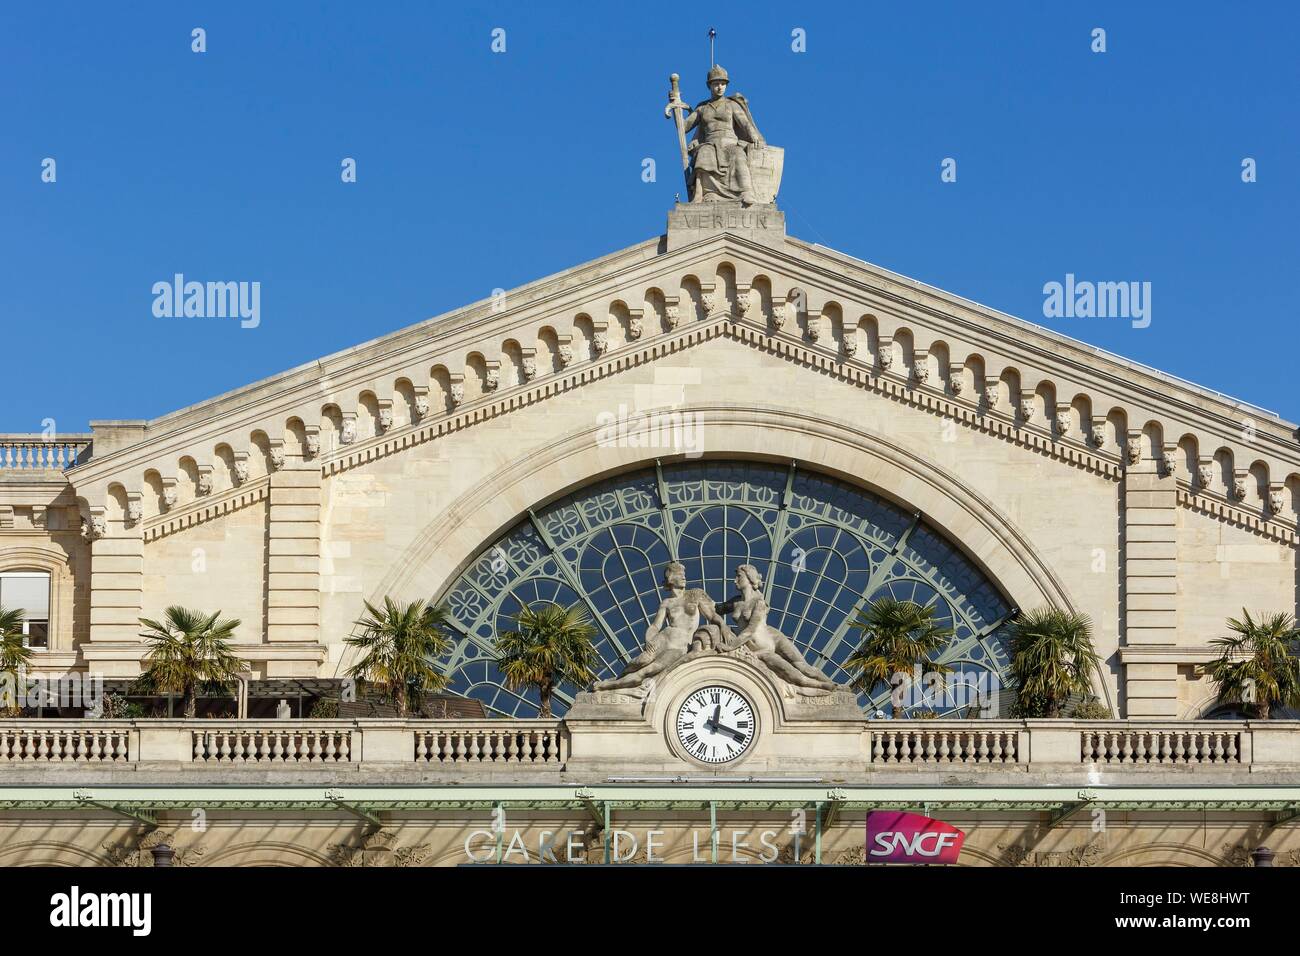 Frankreich, Paris, Gare de Paris-Est oder Gare de l'Est (von Osten), ist einer der sechs großen SNCF Bahnhof Termini in Paris, im Jahre 1849 geöffnet und die Arbeit des Architekten Francois-Alexandre Duquesney, der östlichen Fassade an der Spitze mit einer Statue, die die Stadt Verdun von Bildhauer Varenne Stockfoto